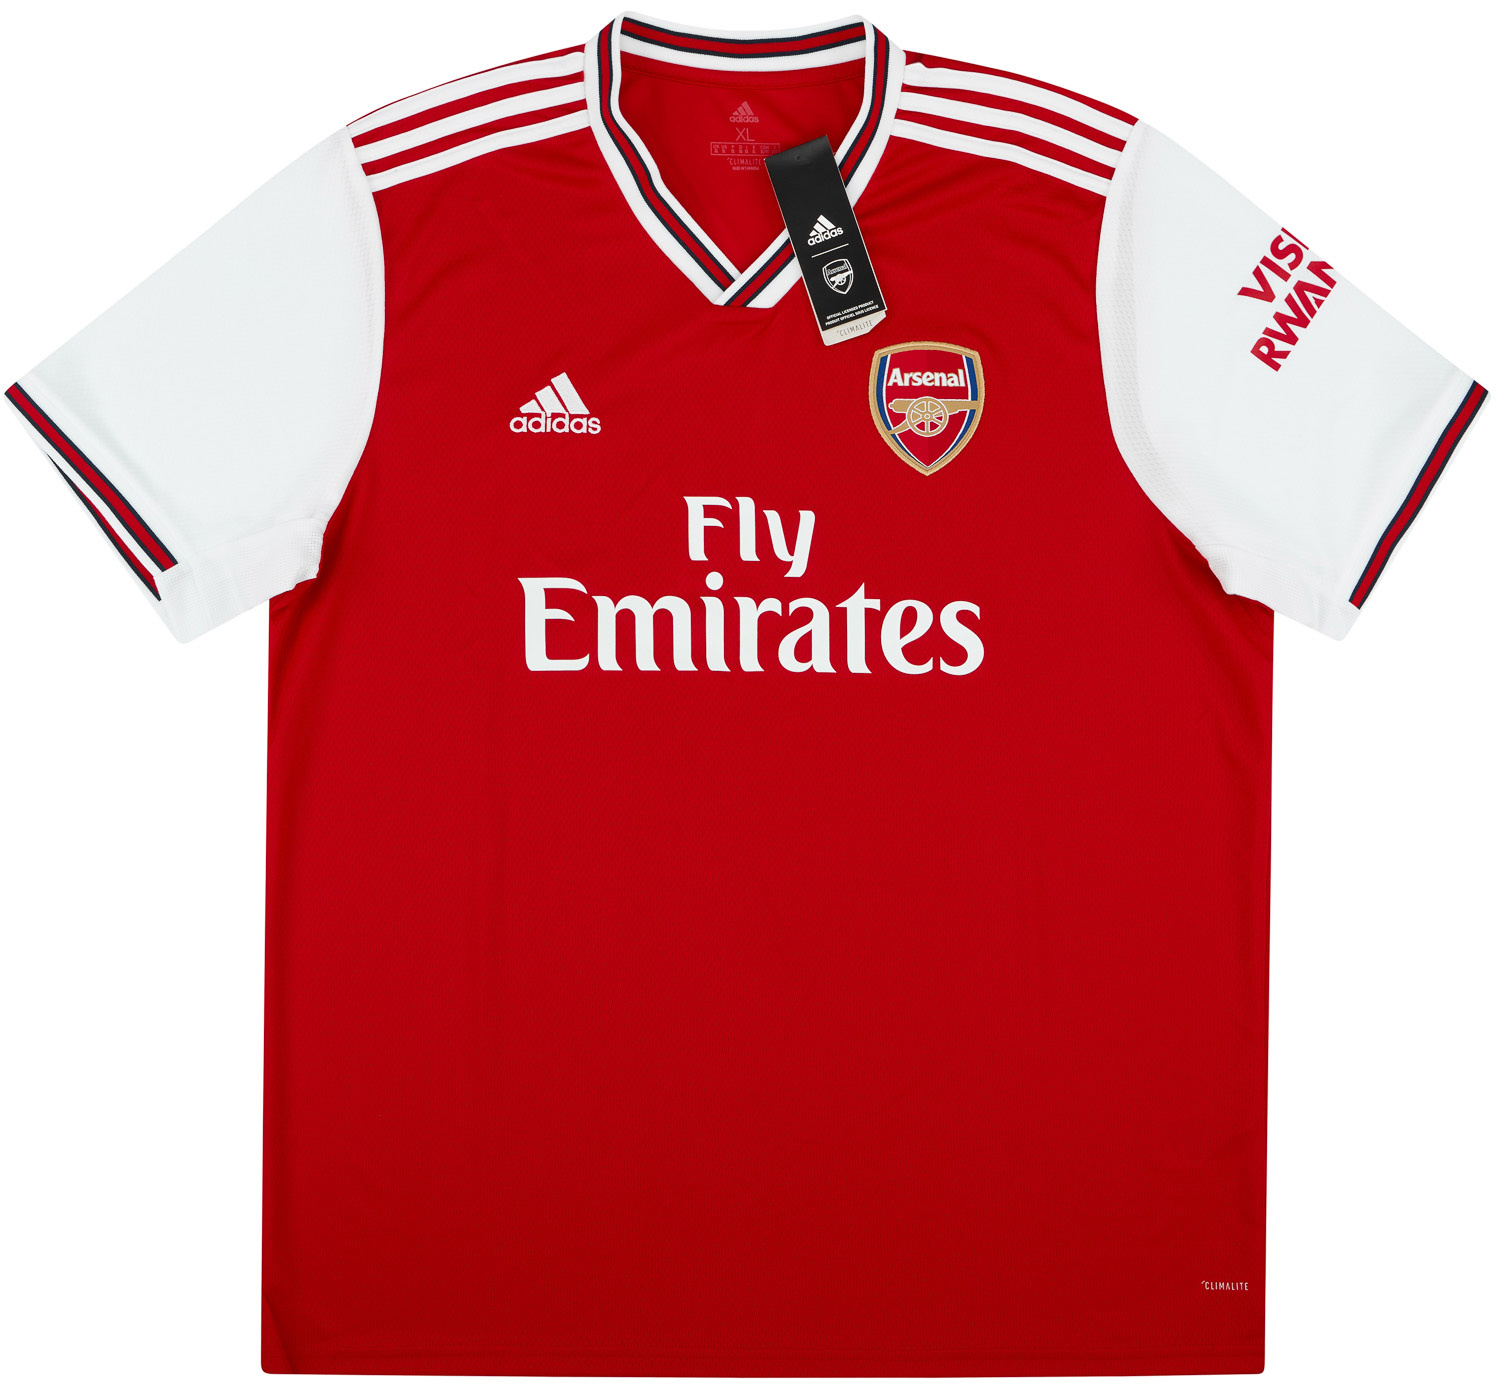 efecto una vez Fabricación 2019-20 Arsenal Home Shirt - NEW